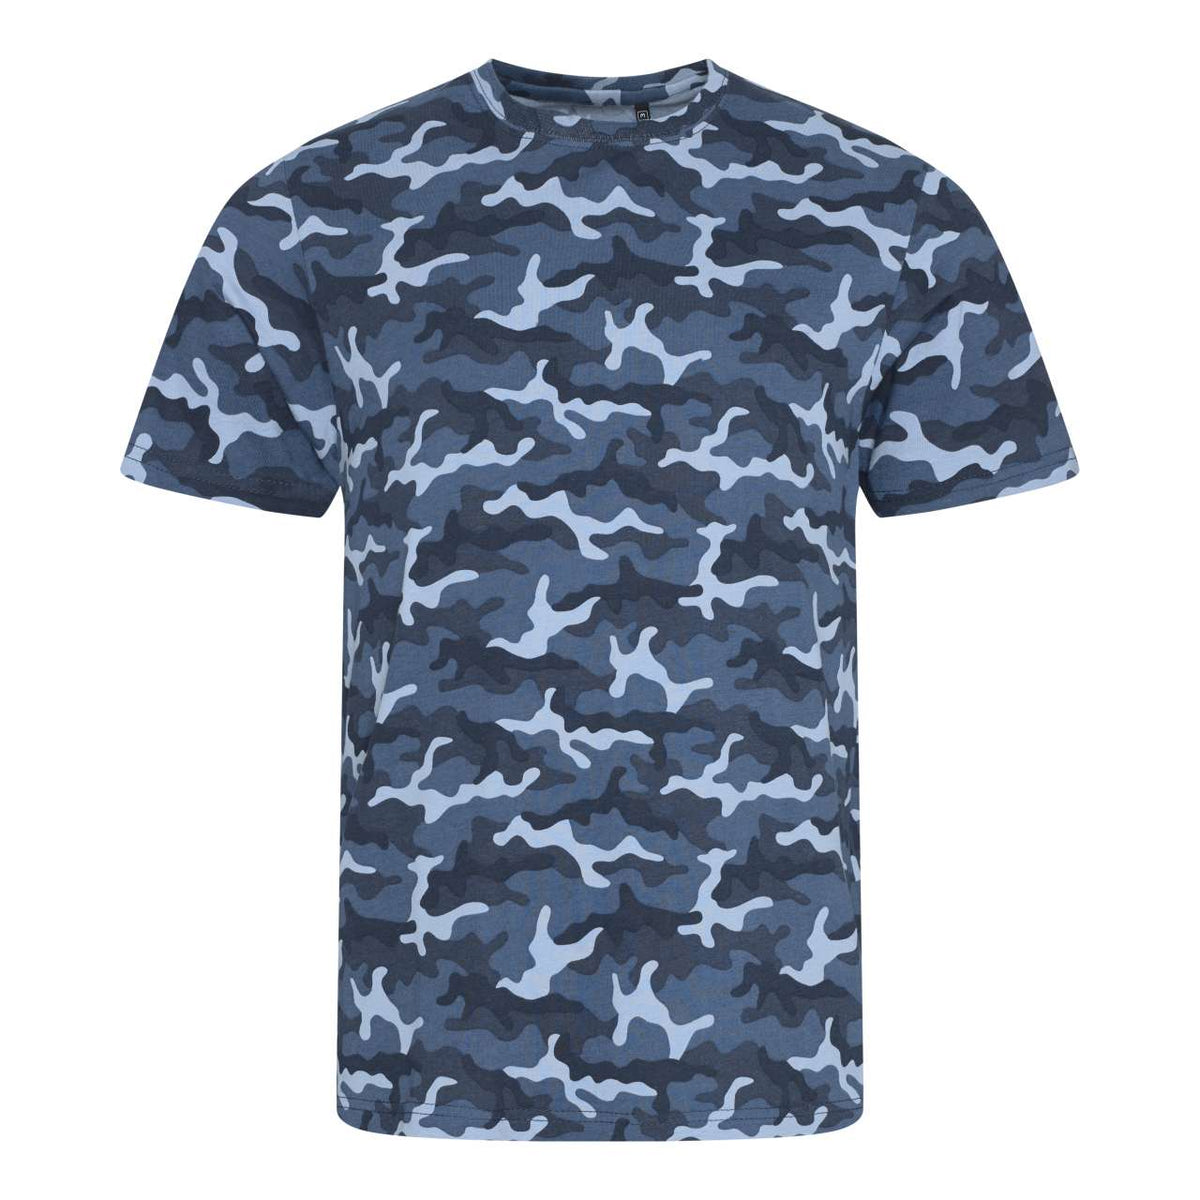 Just Ts Herren Camouflage T-Shirt Army Tarn Shirt Armee Shirt